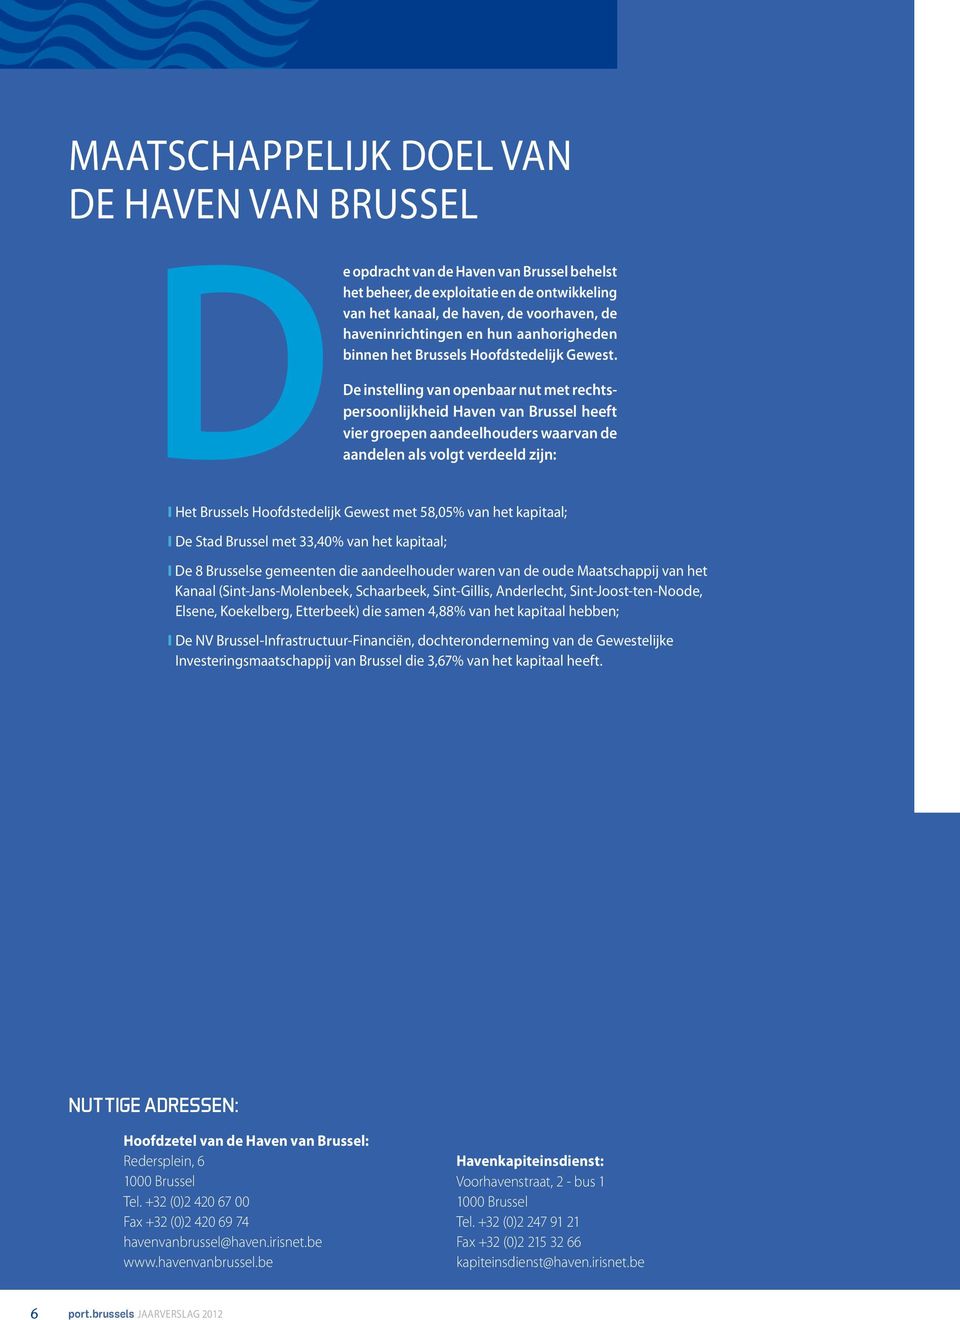 De instelling van openbaar nut met rechtspersoonlijkheid Haven van Brussel heeft vier groepen aandeelhouders waarvan de aandelen als volgt verdeeld zijn: I het Brussels Hoofdstedelijk Gewest met